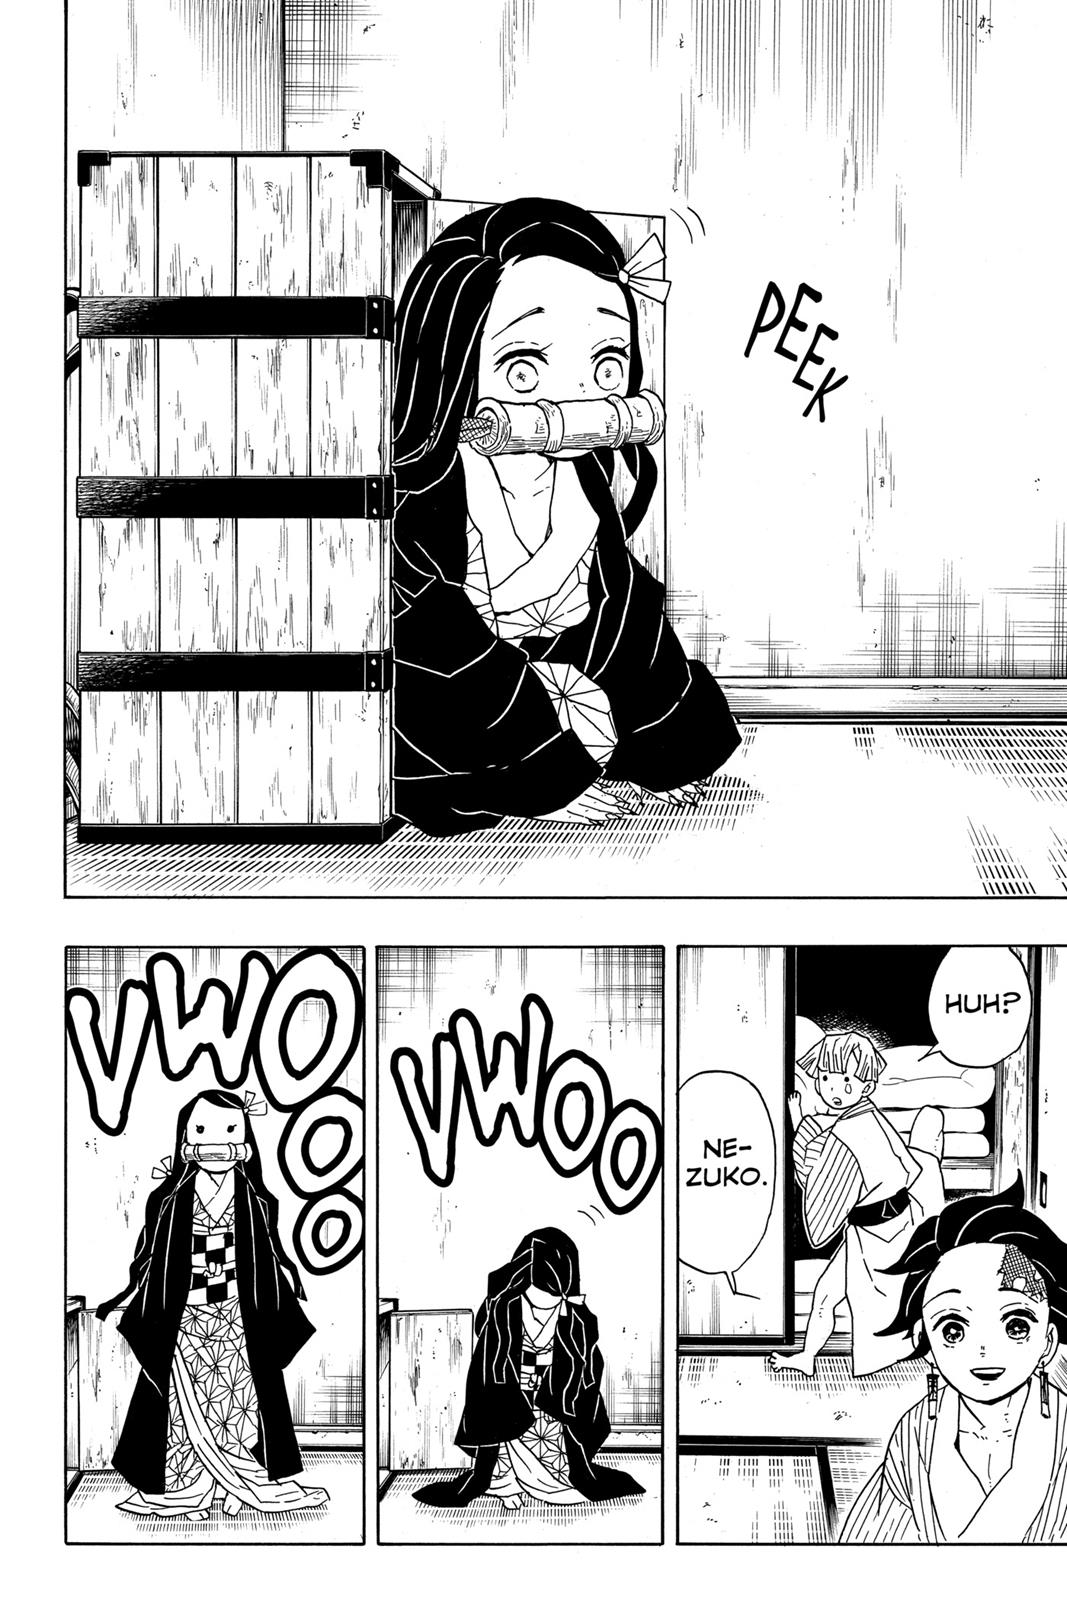 Demon Slayer Manga Manga Chapter - 27 - image 16